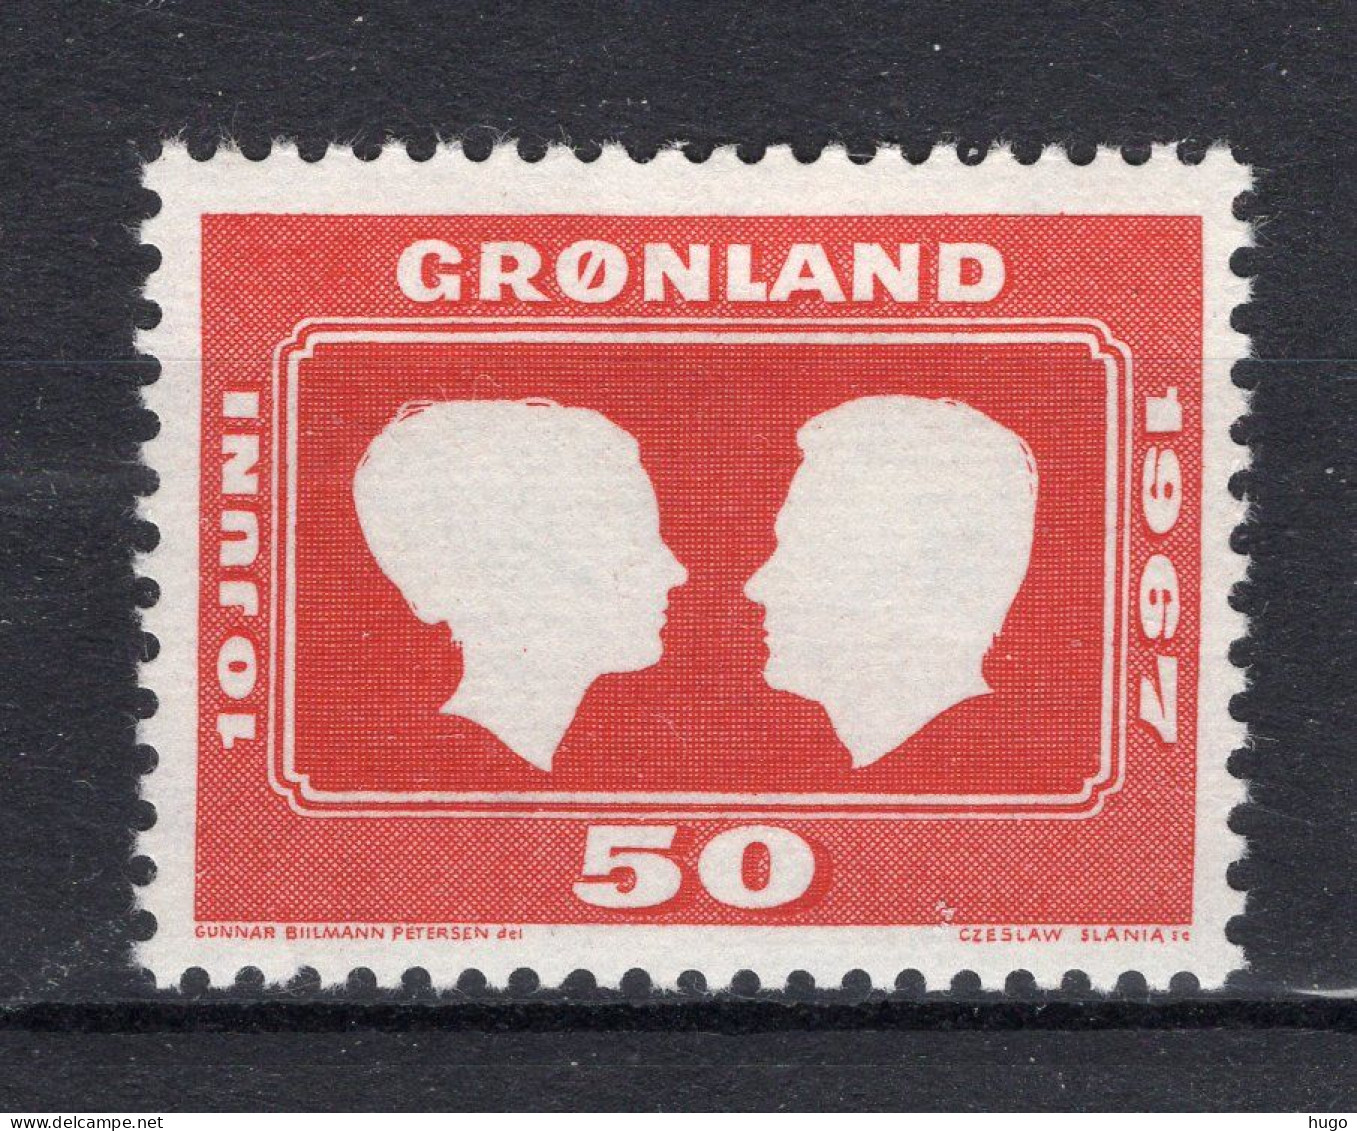 DENEMARKEN-GROENLAND 59 MNH 1967 -1 - Nuovi